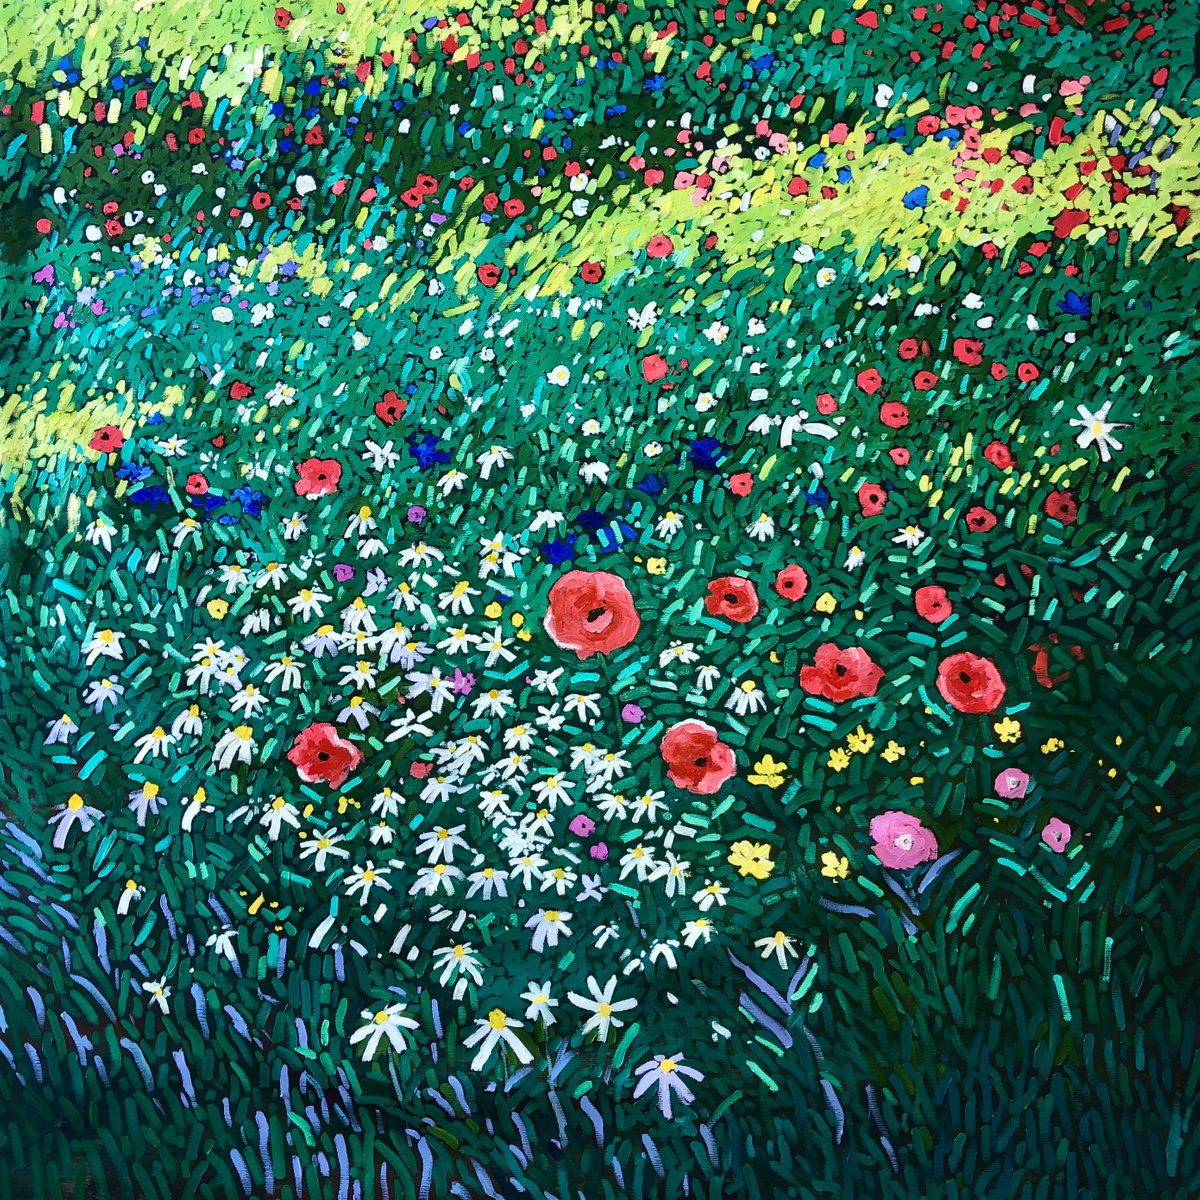 Meadow wildflowers by Volodymyr Smoliak